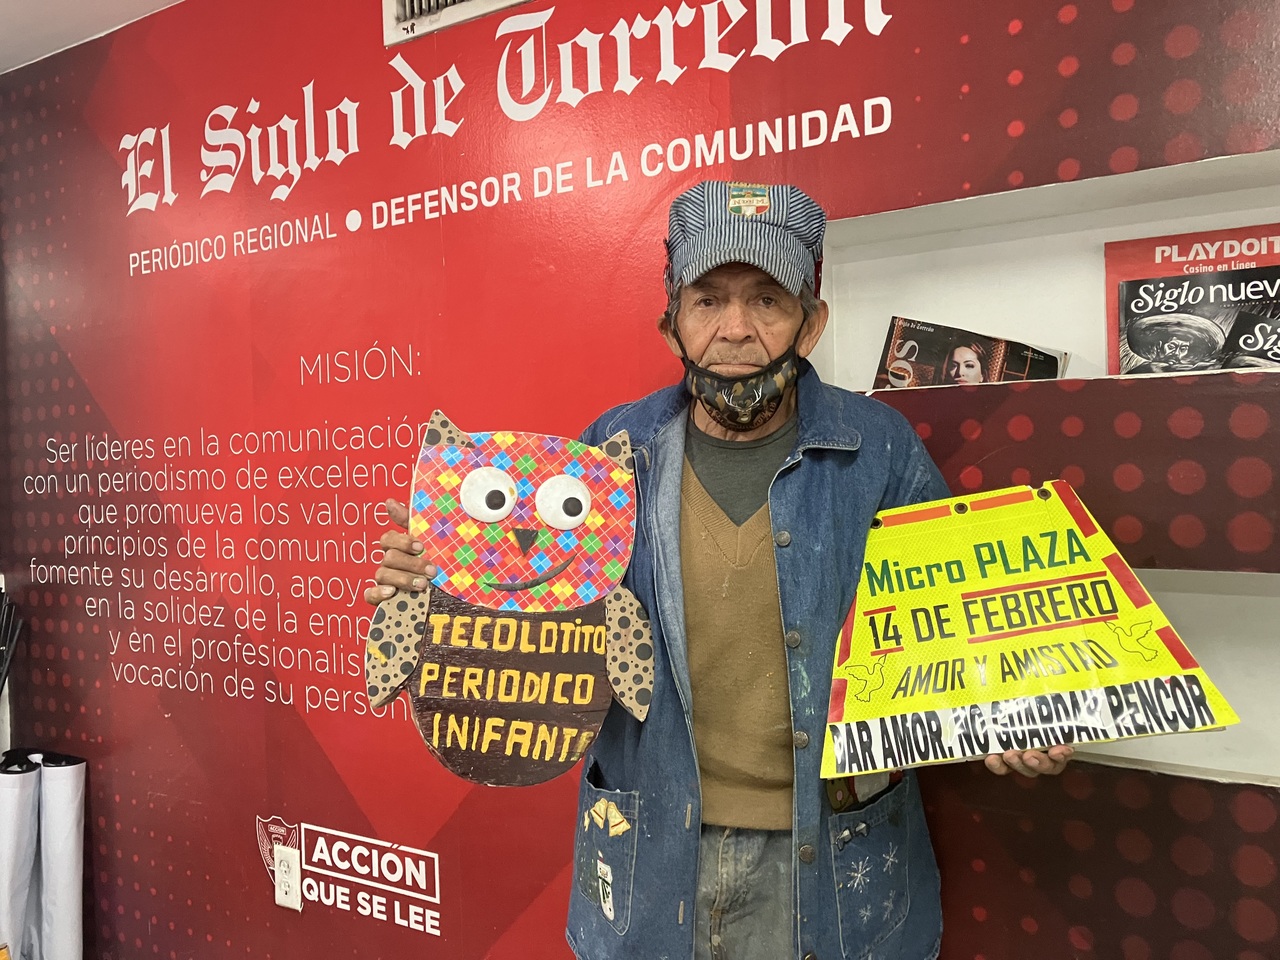 Invitan a imposición de ceniza en Microplaza de Torreón